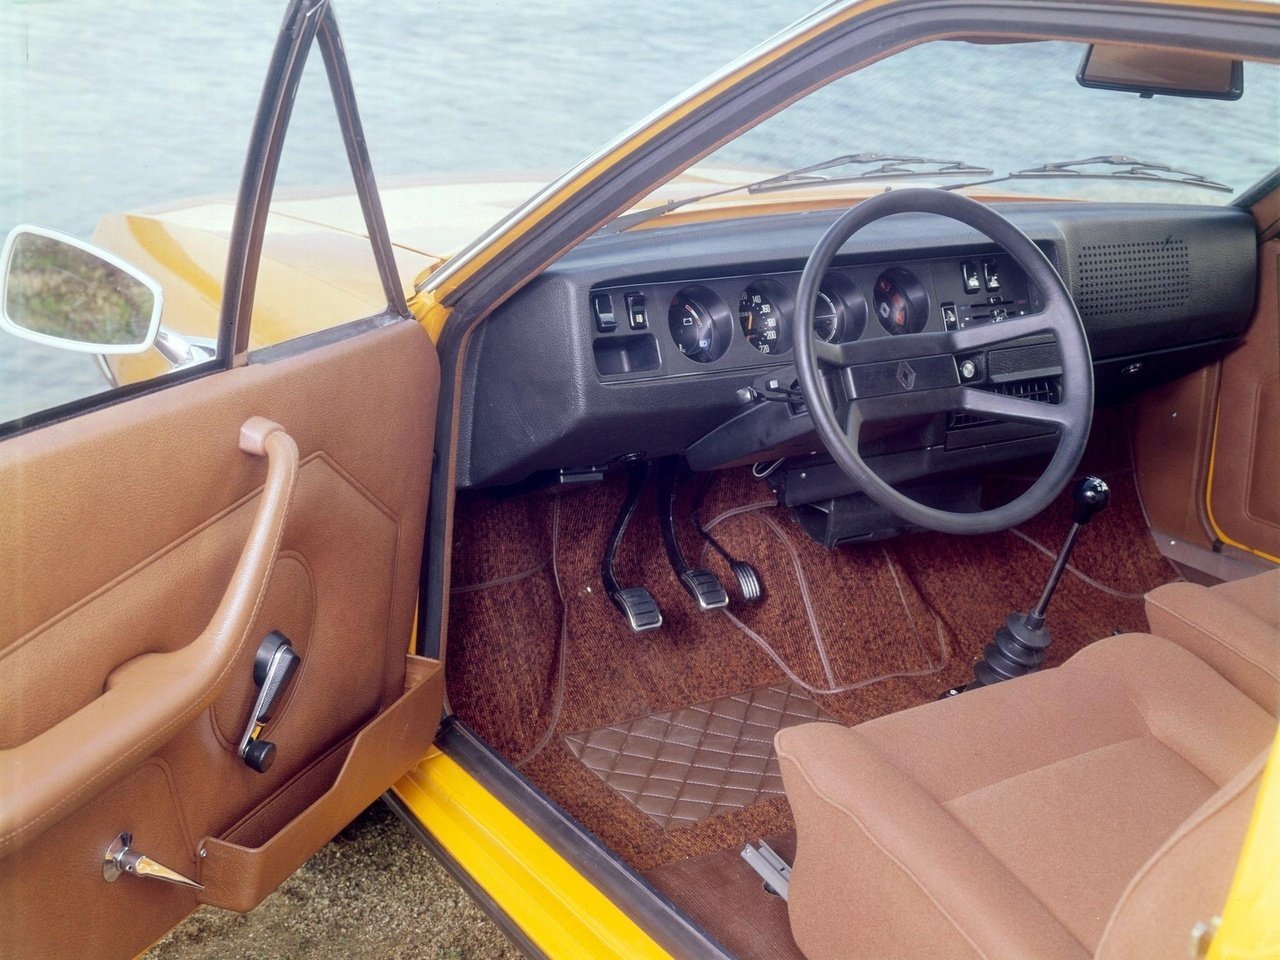 хэтчбек 3 дв. Renault 15 1972 - 1980г выпуска модификация 1.3 AT (60 л.с.)